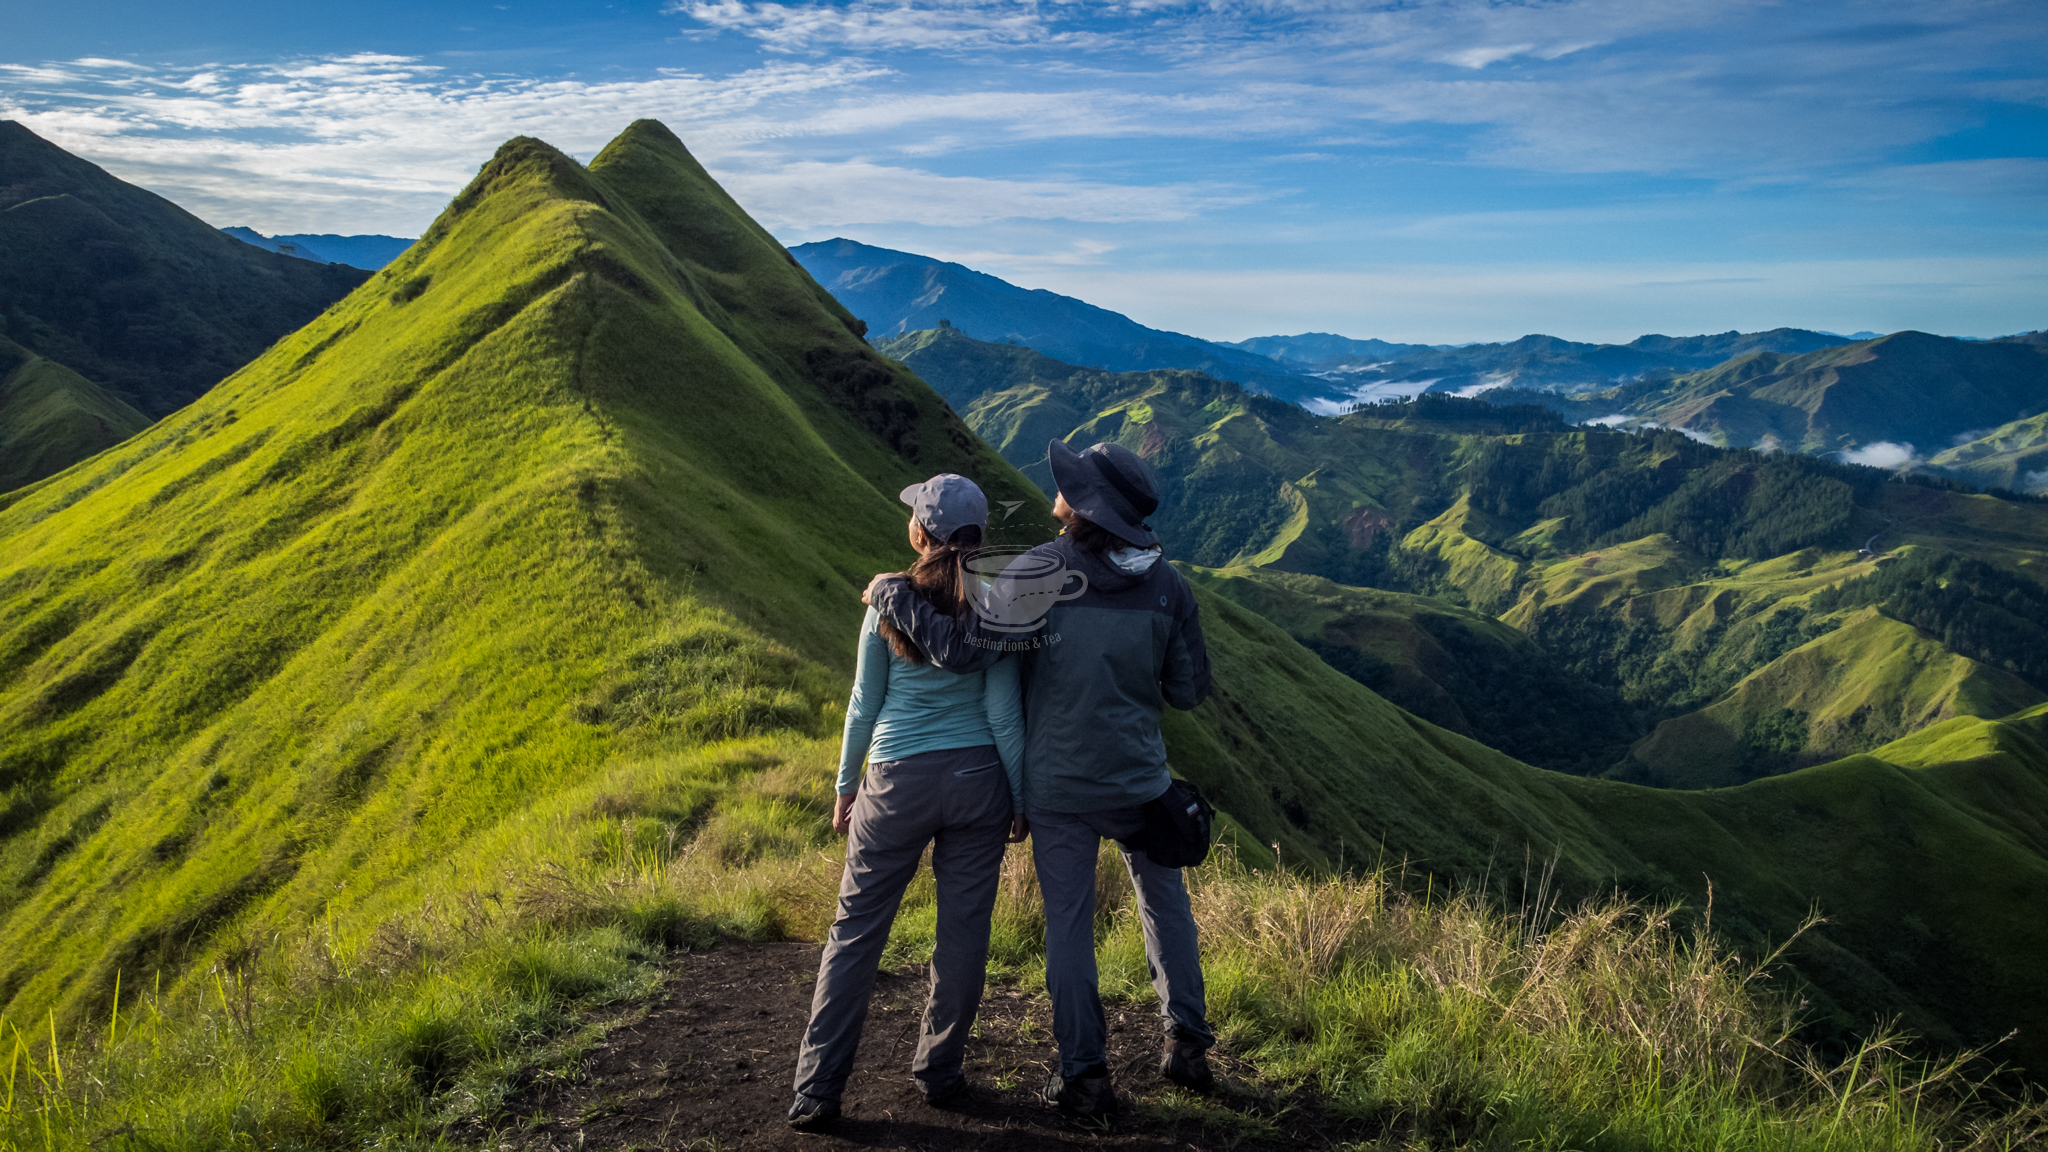 Hiking at Mt. Kulago – Travel Guide, Sample Itinerary